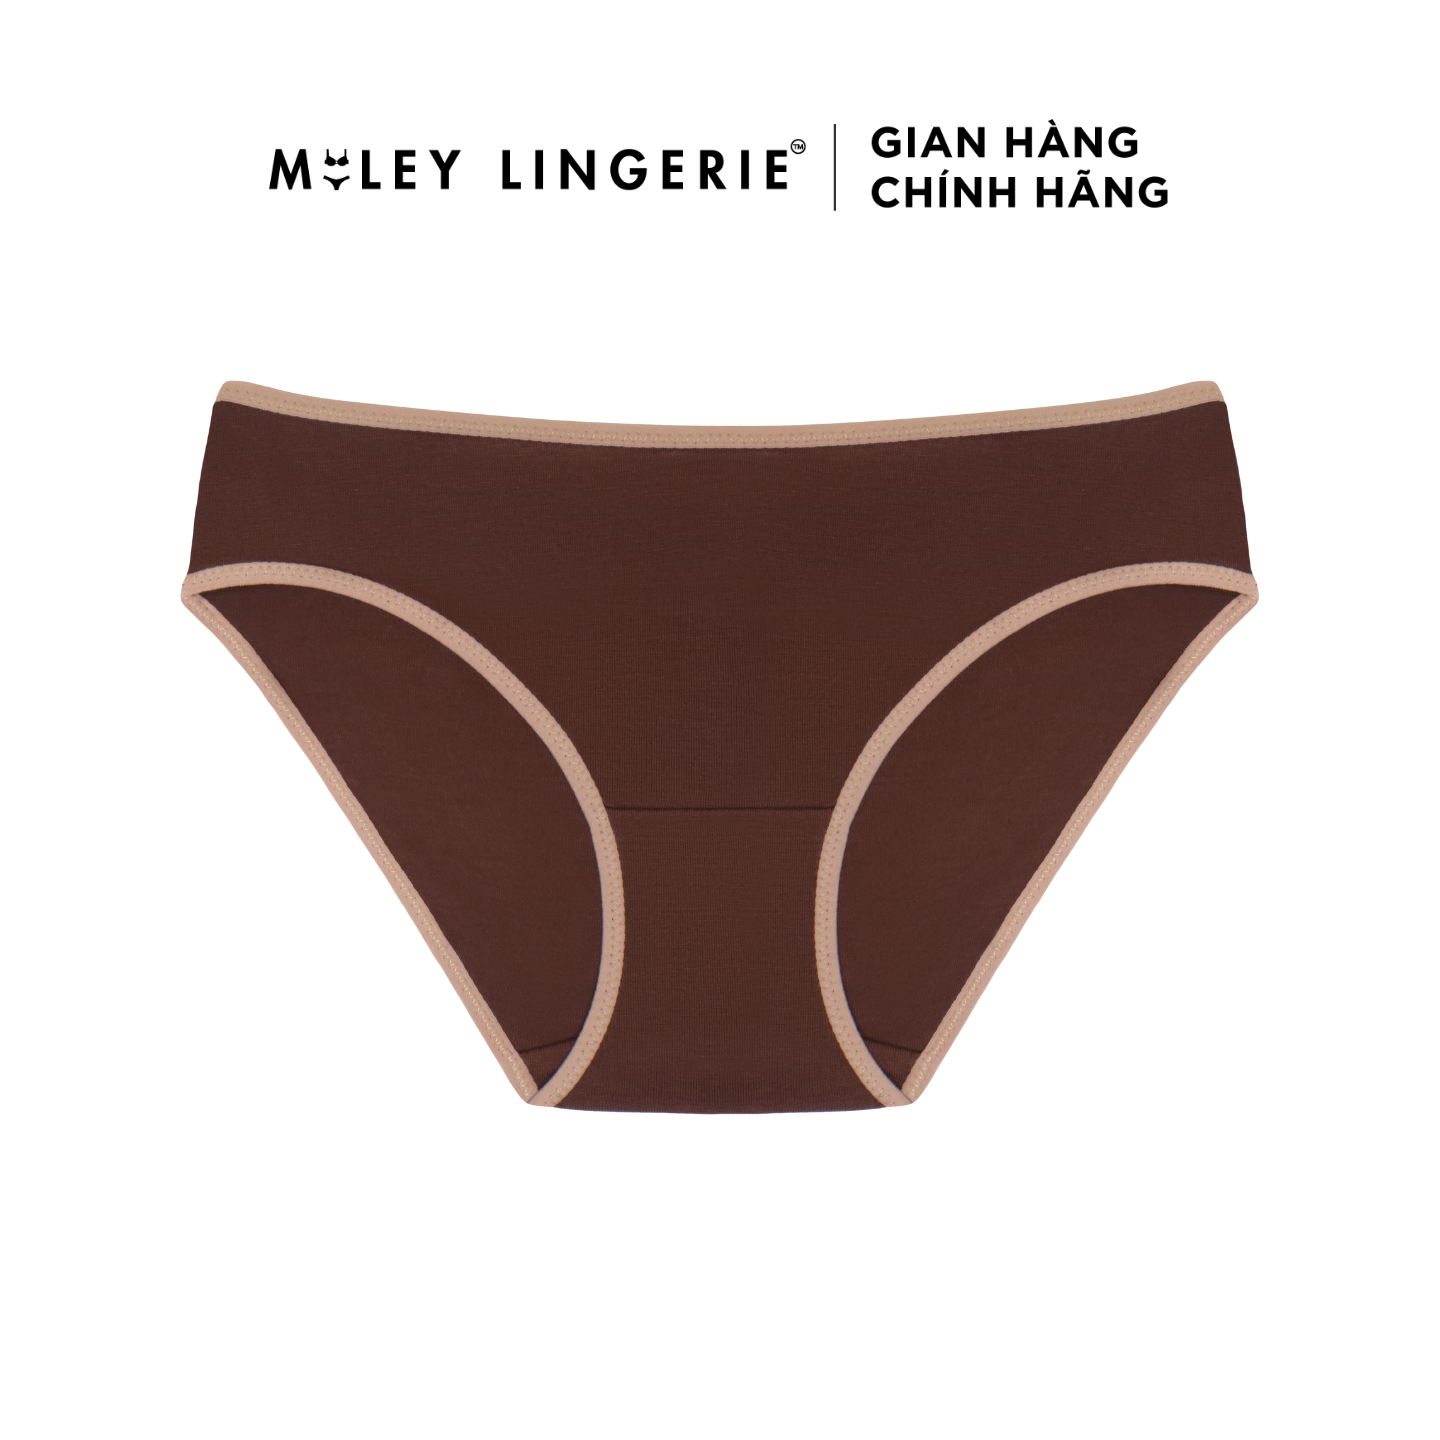 Hình ảnh Combo 5 Quần Lót Nữ Cotton Flexi Miley Lingerie - Giao màu ngẫu nhiên